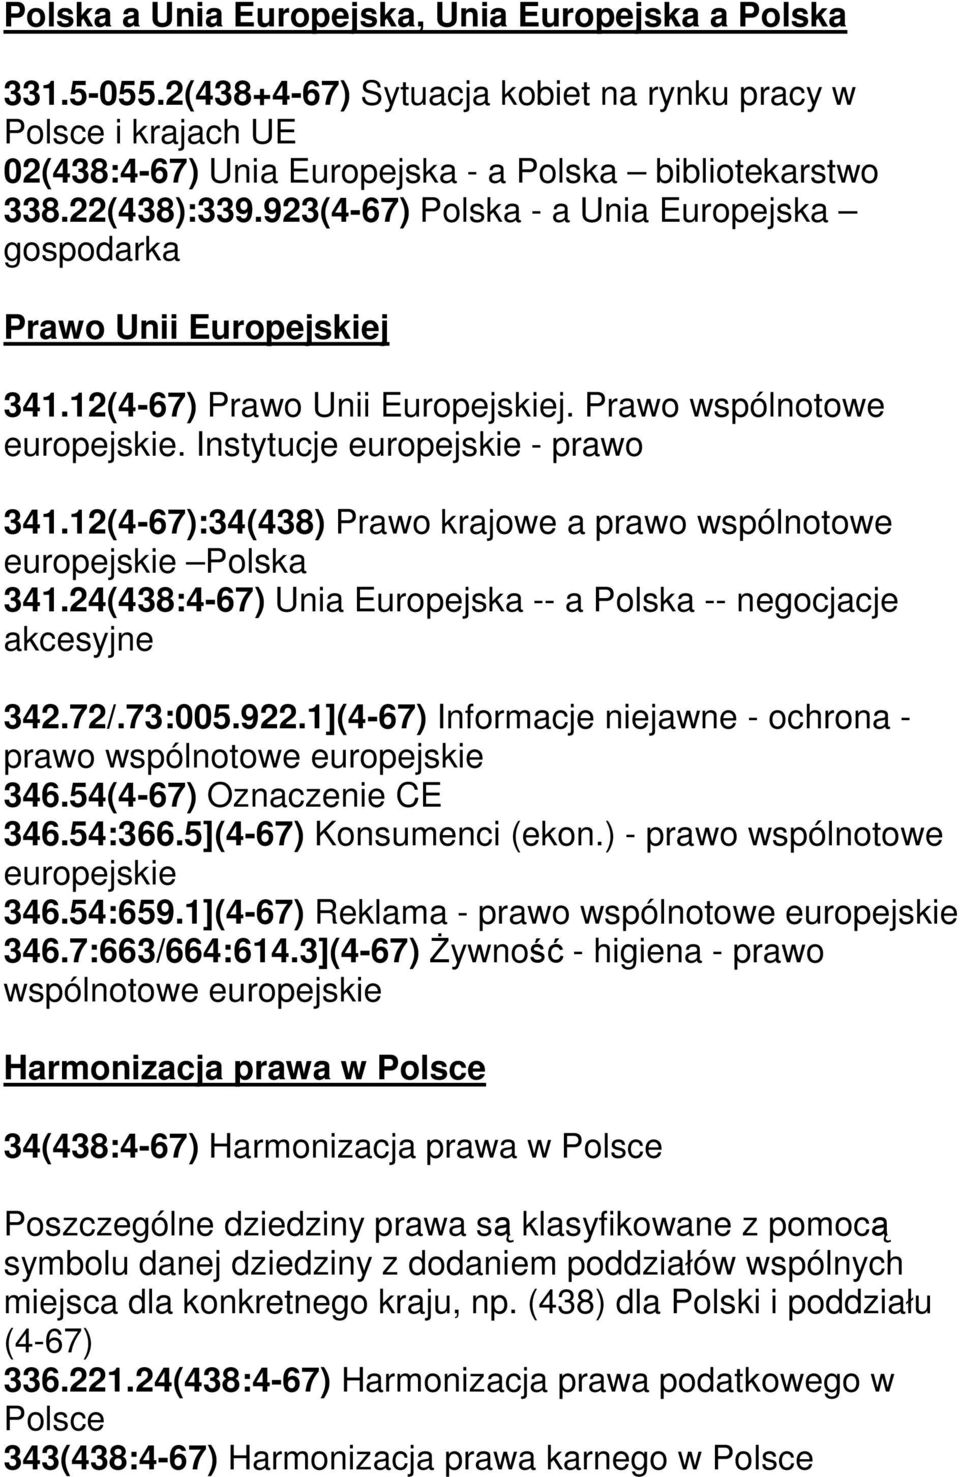 12(4-67):34(438) Prawo krajowe a prawo wspólnotowe europejskie Polska 341.24(438:4-67) Unia Europejska -- a Polska -- negocjacje akcesyjne 342.72/.73:005.922.